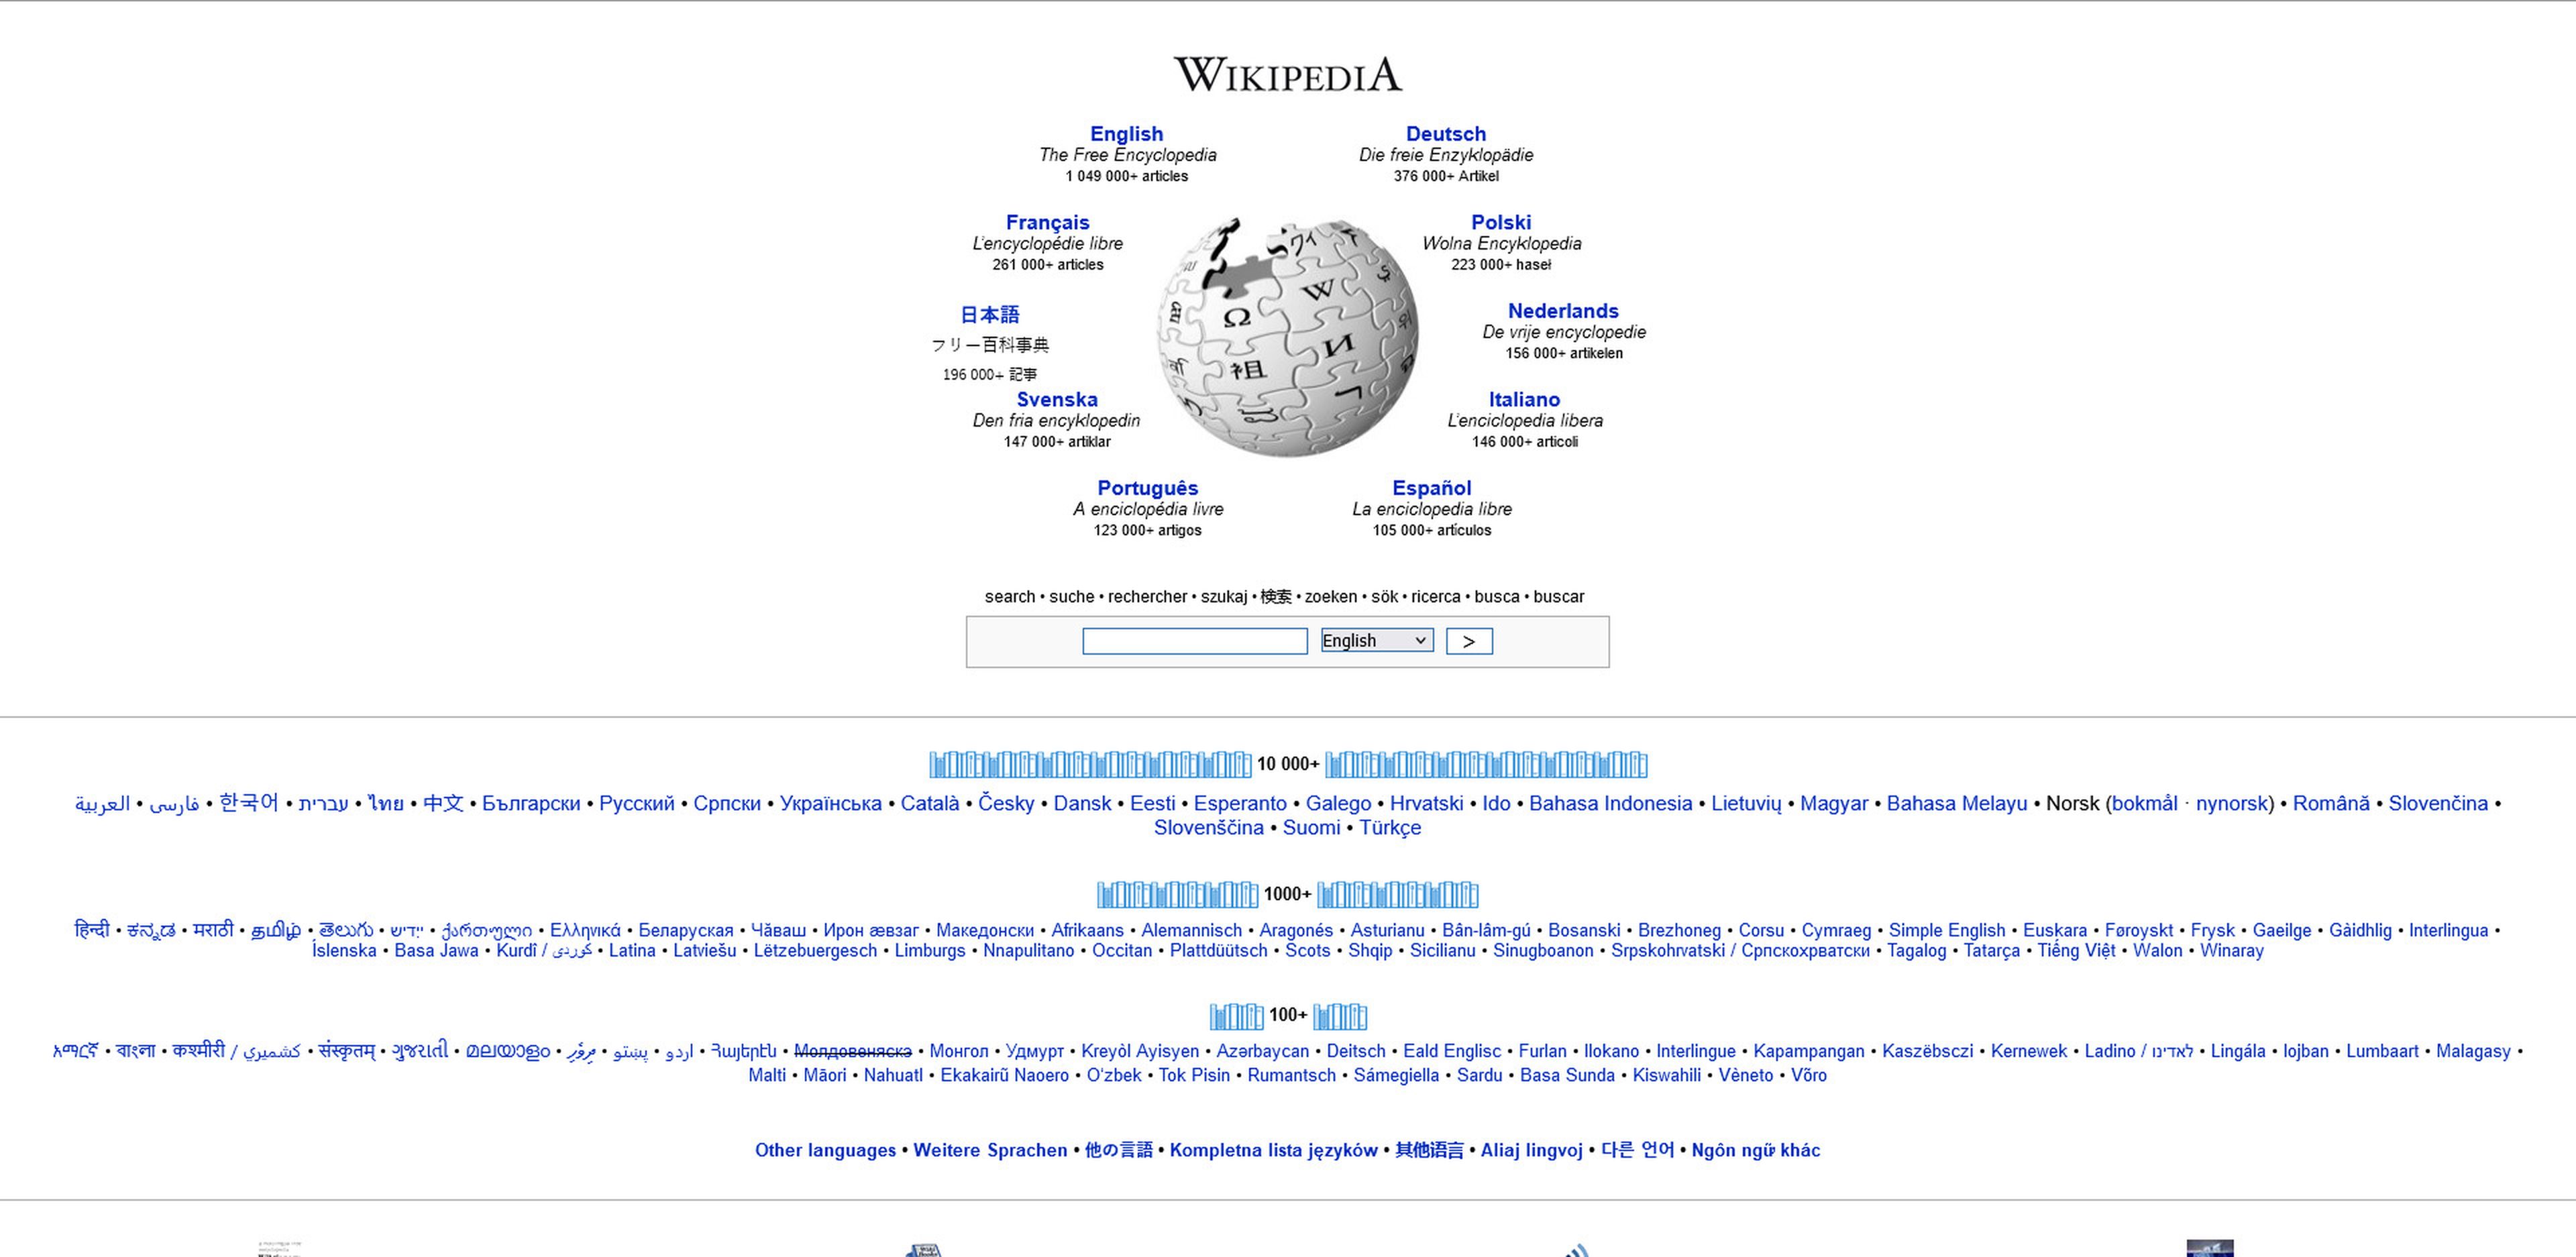 Paleontología web Wikipedia